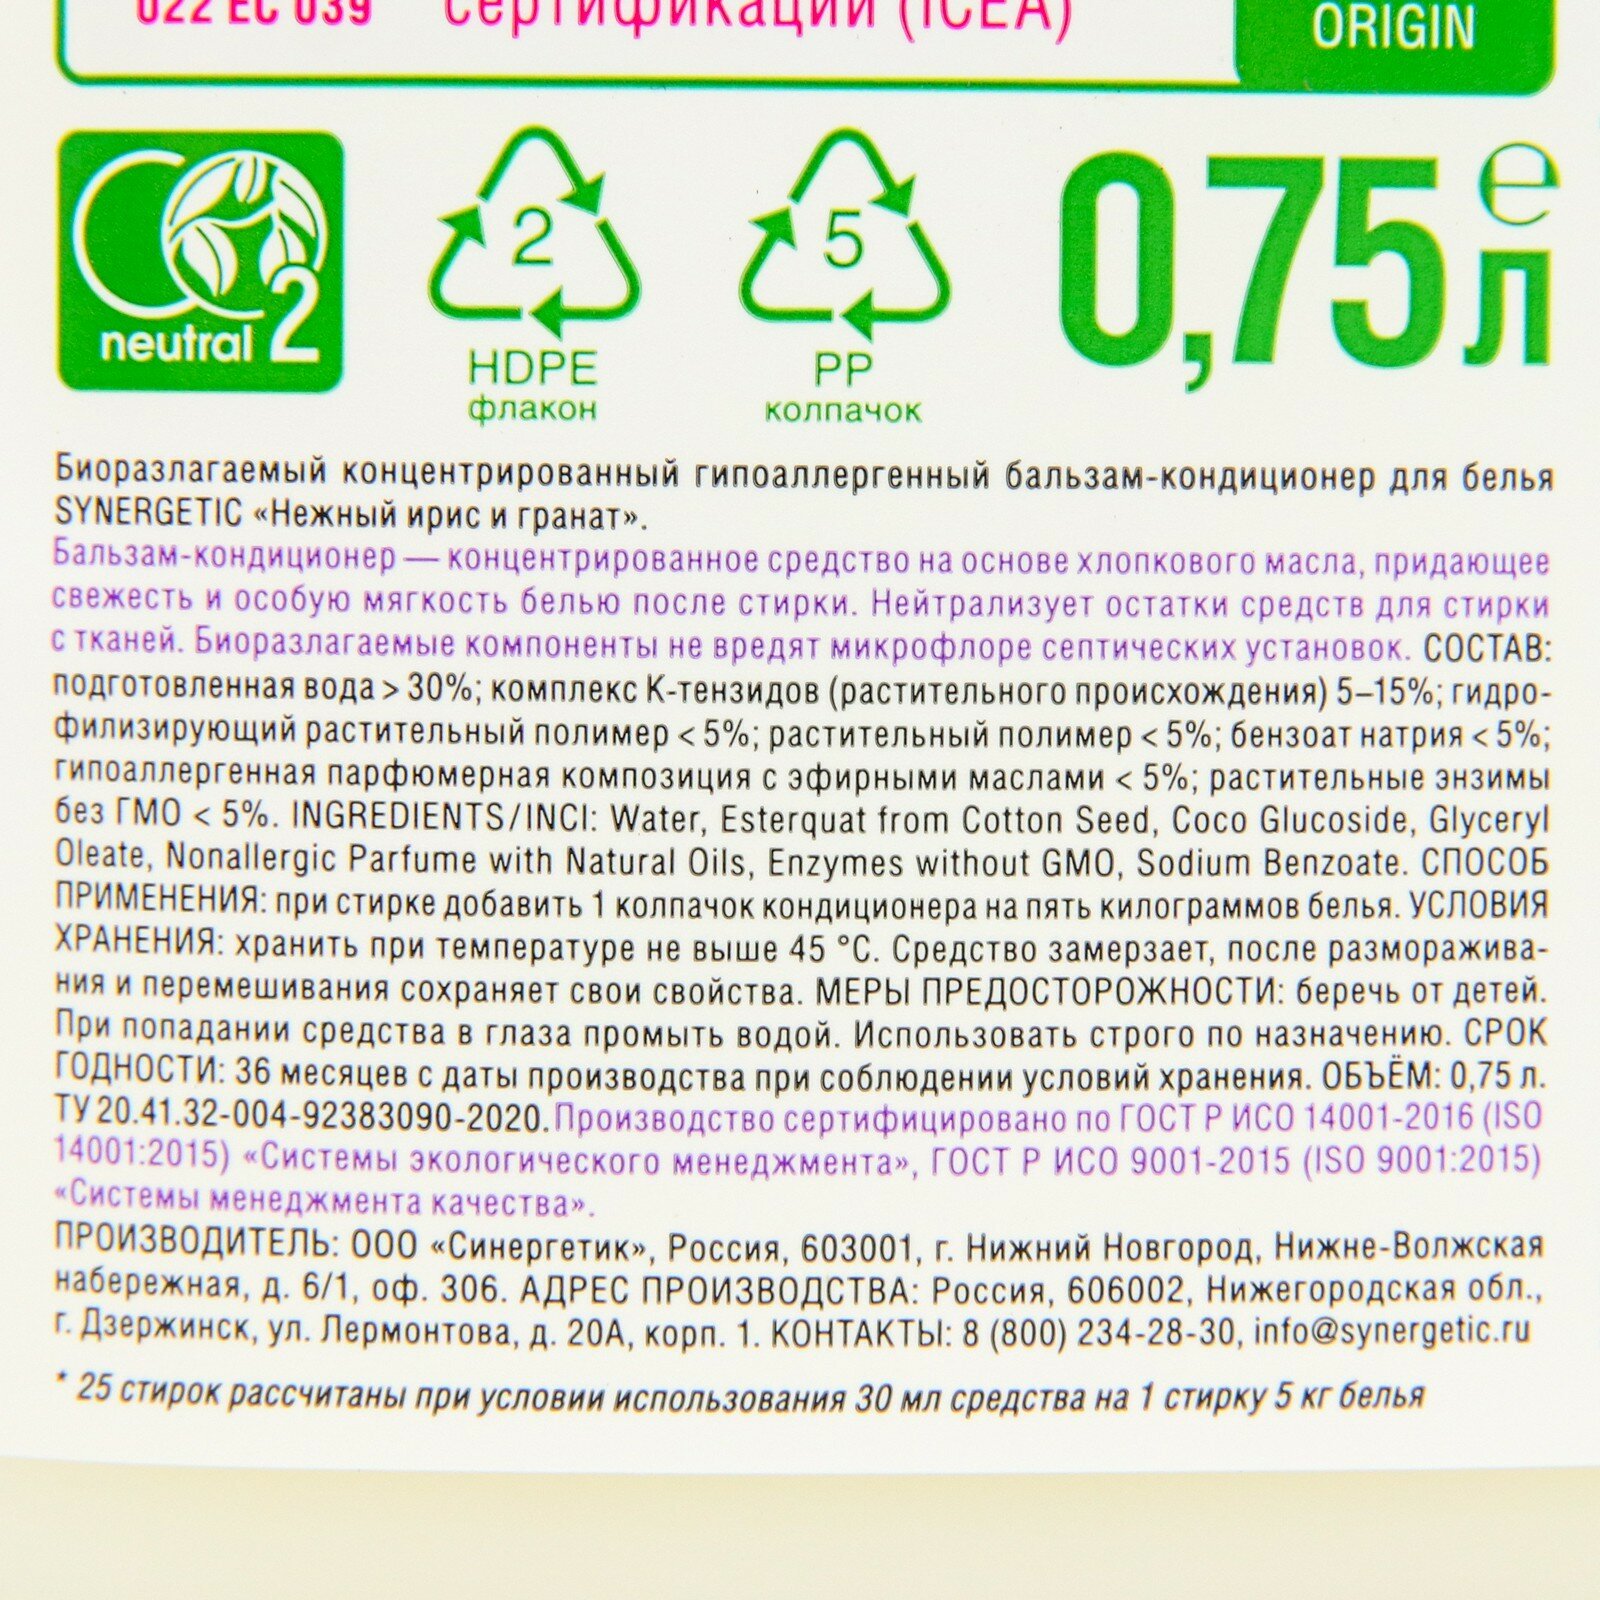 Биоразлагаемый гипоаллергенный бальзам-кондиционер Synergetic "Ирис и Гранат", 3,75л - фото №8